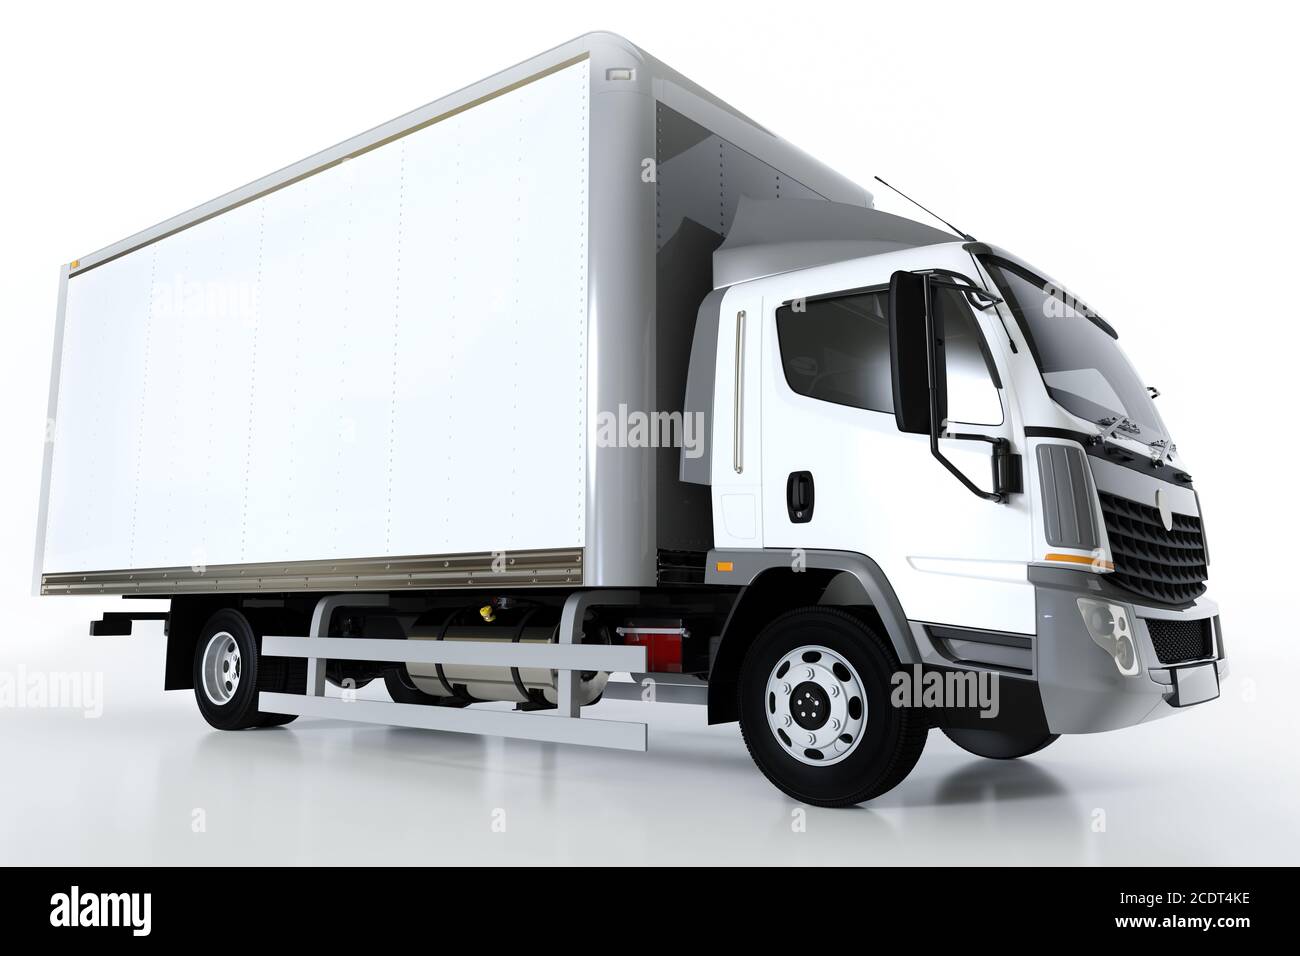 Camión comercial de carga con remolque blanco. Diseño genérico y sin brandless. Foto de stock